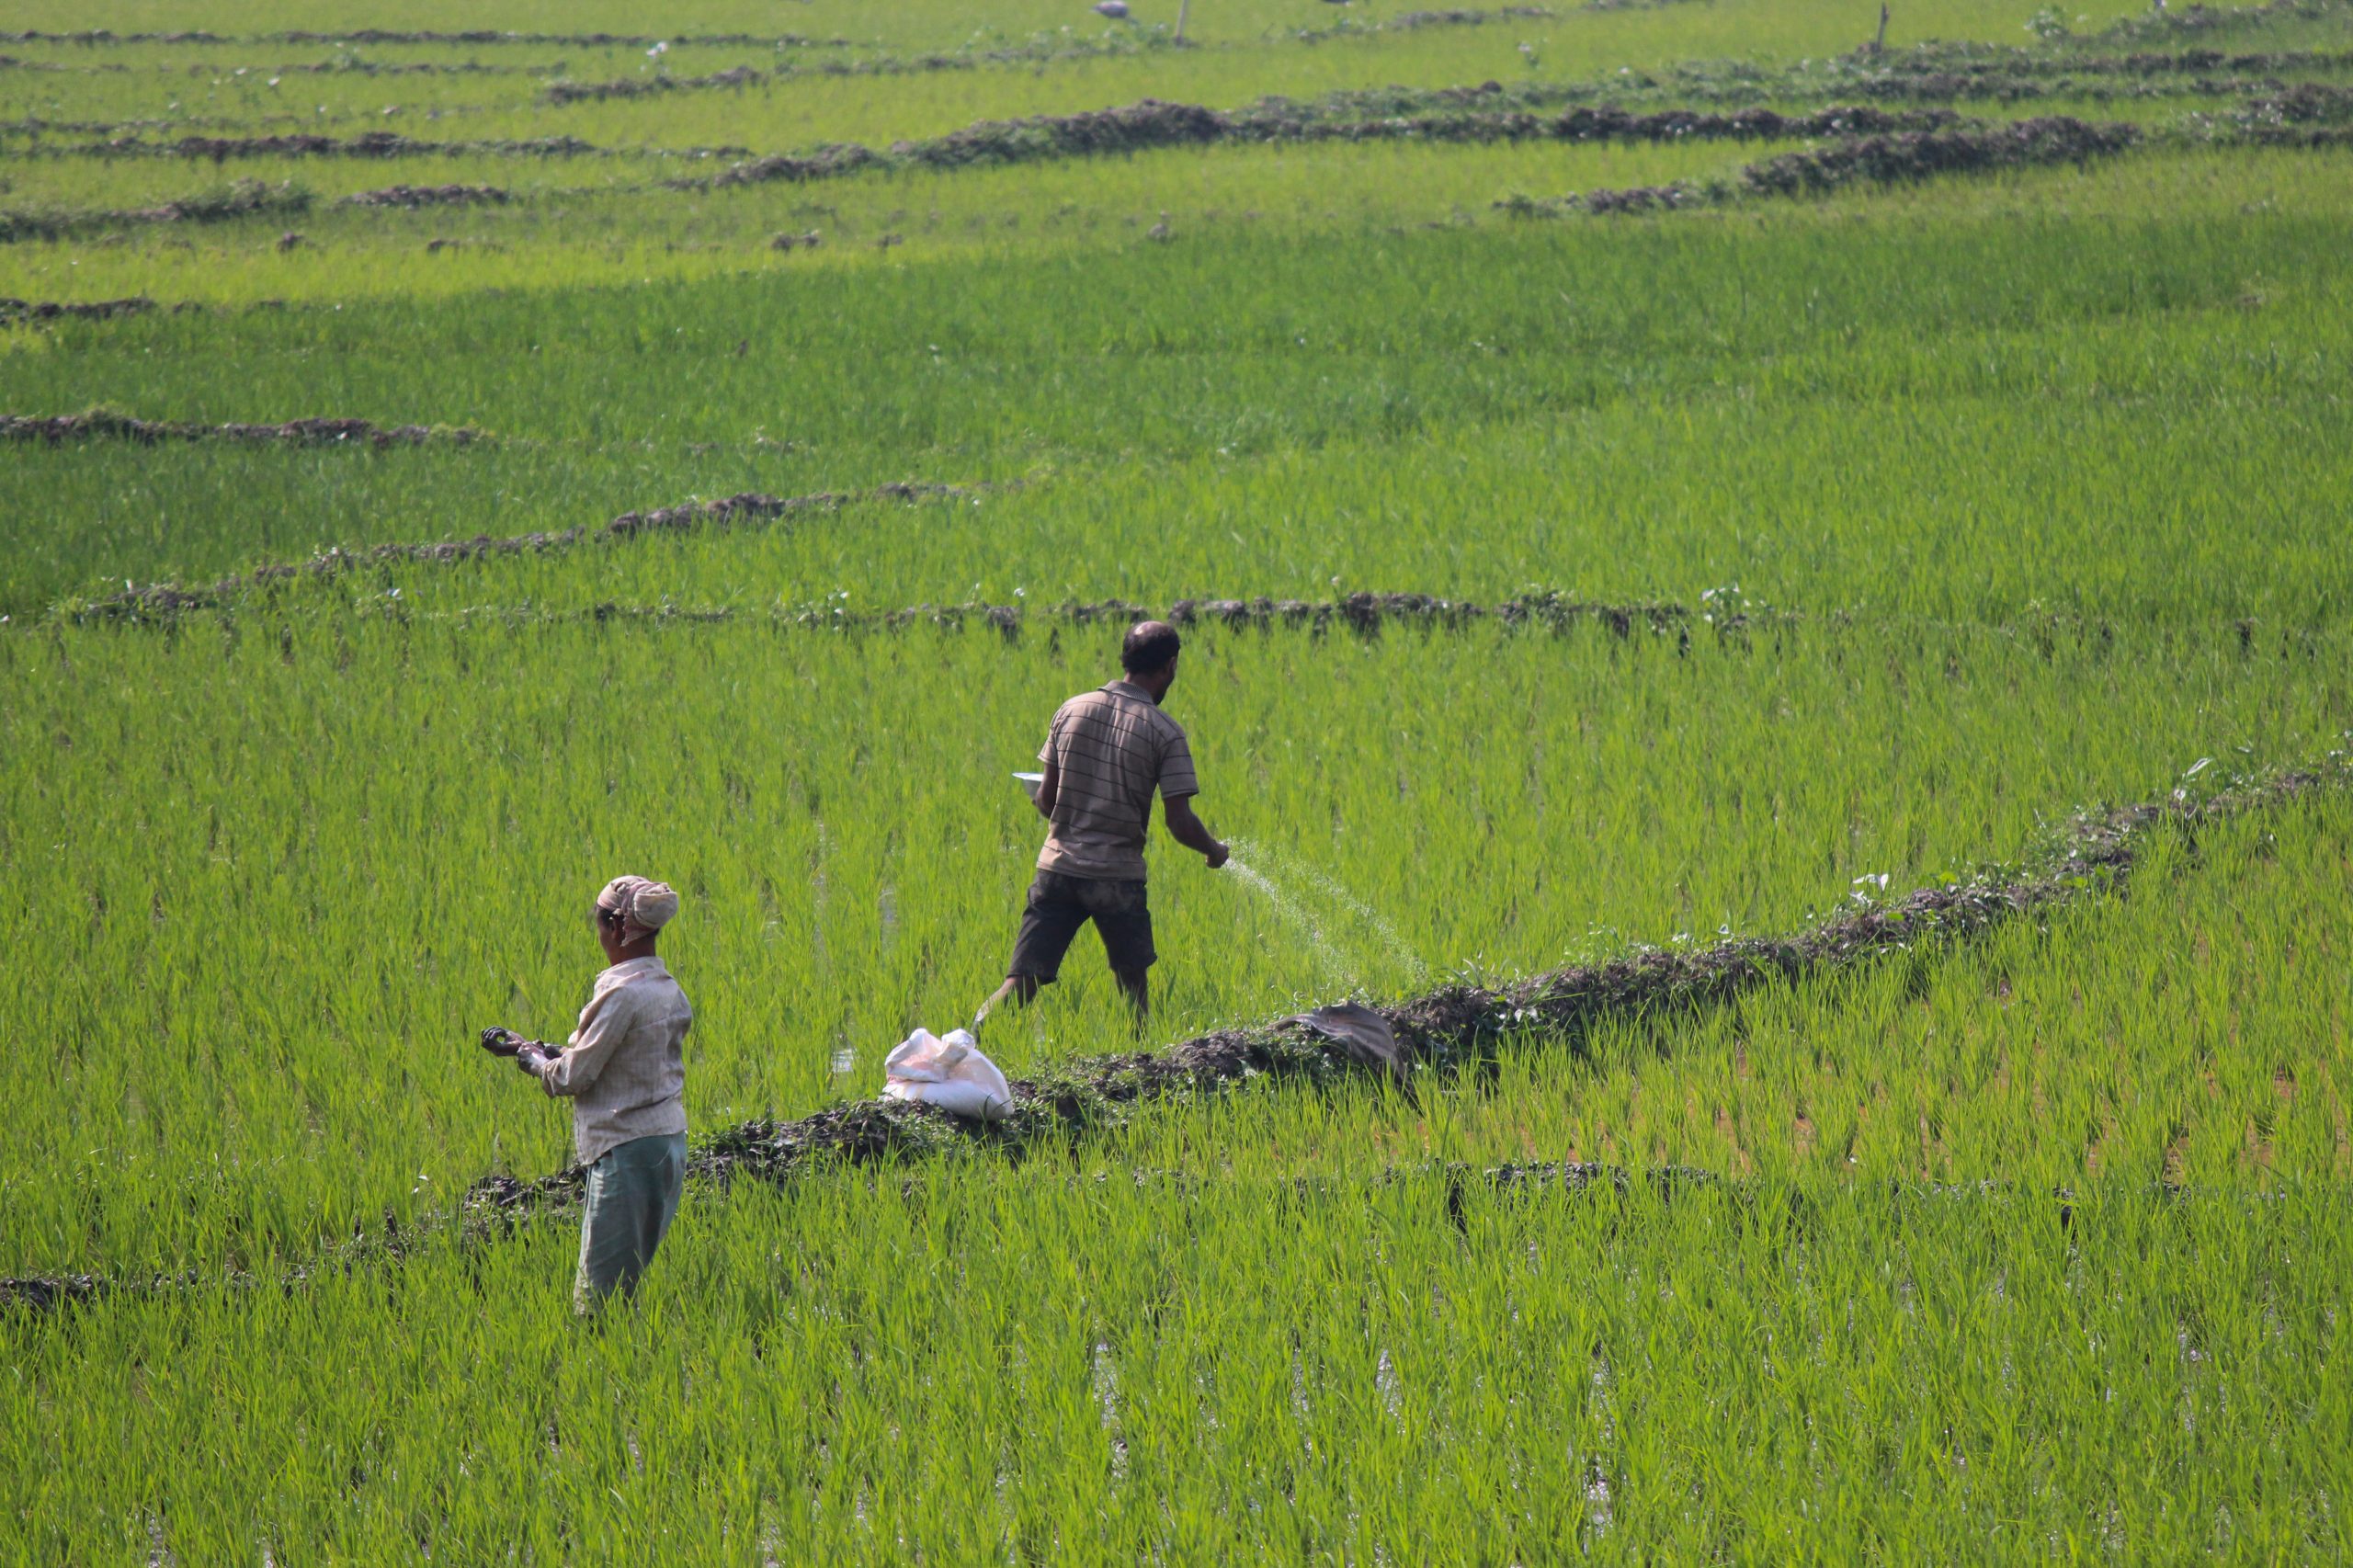 Farmers in the field